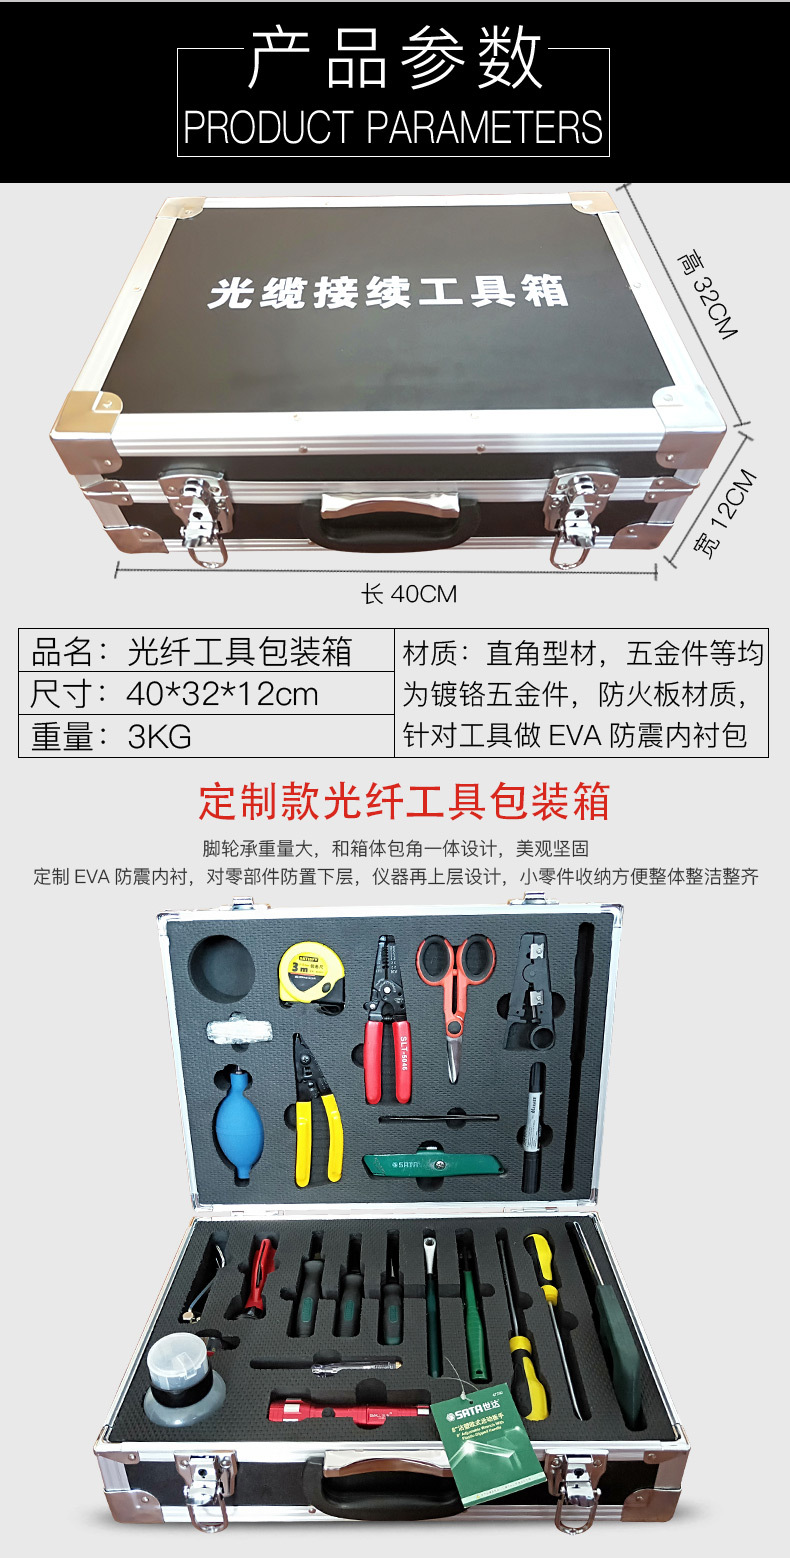 铝合金包装箱 多功能光纤工具设备箱 各种铝合金包装箱可批发定制示例图2